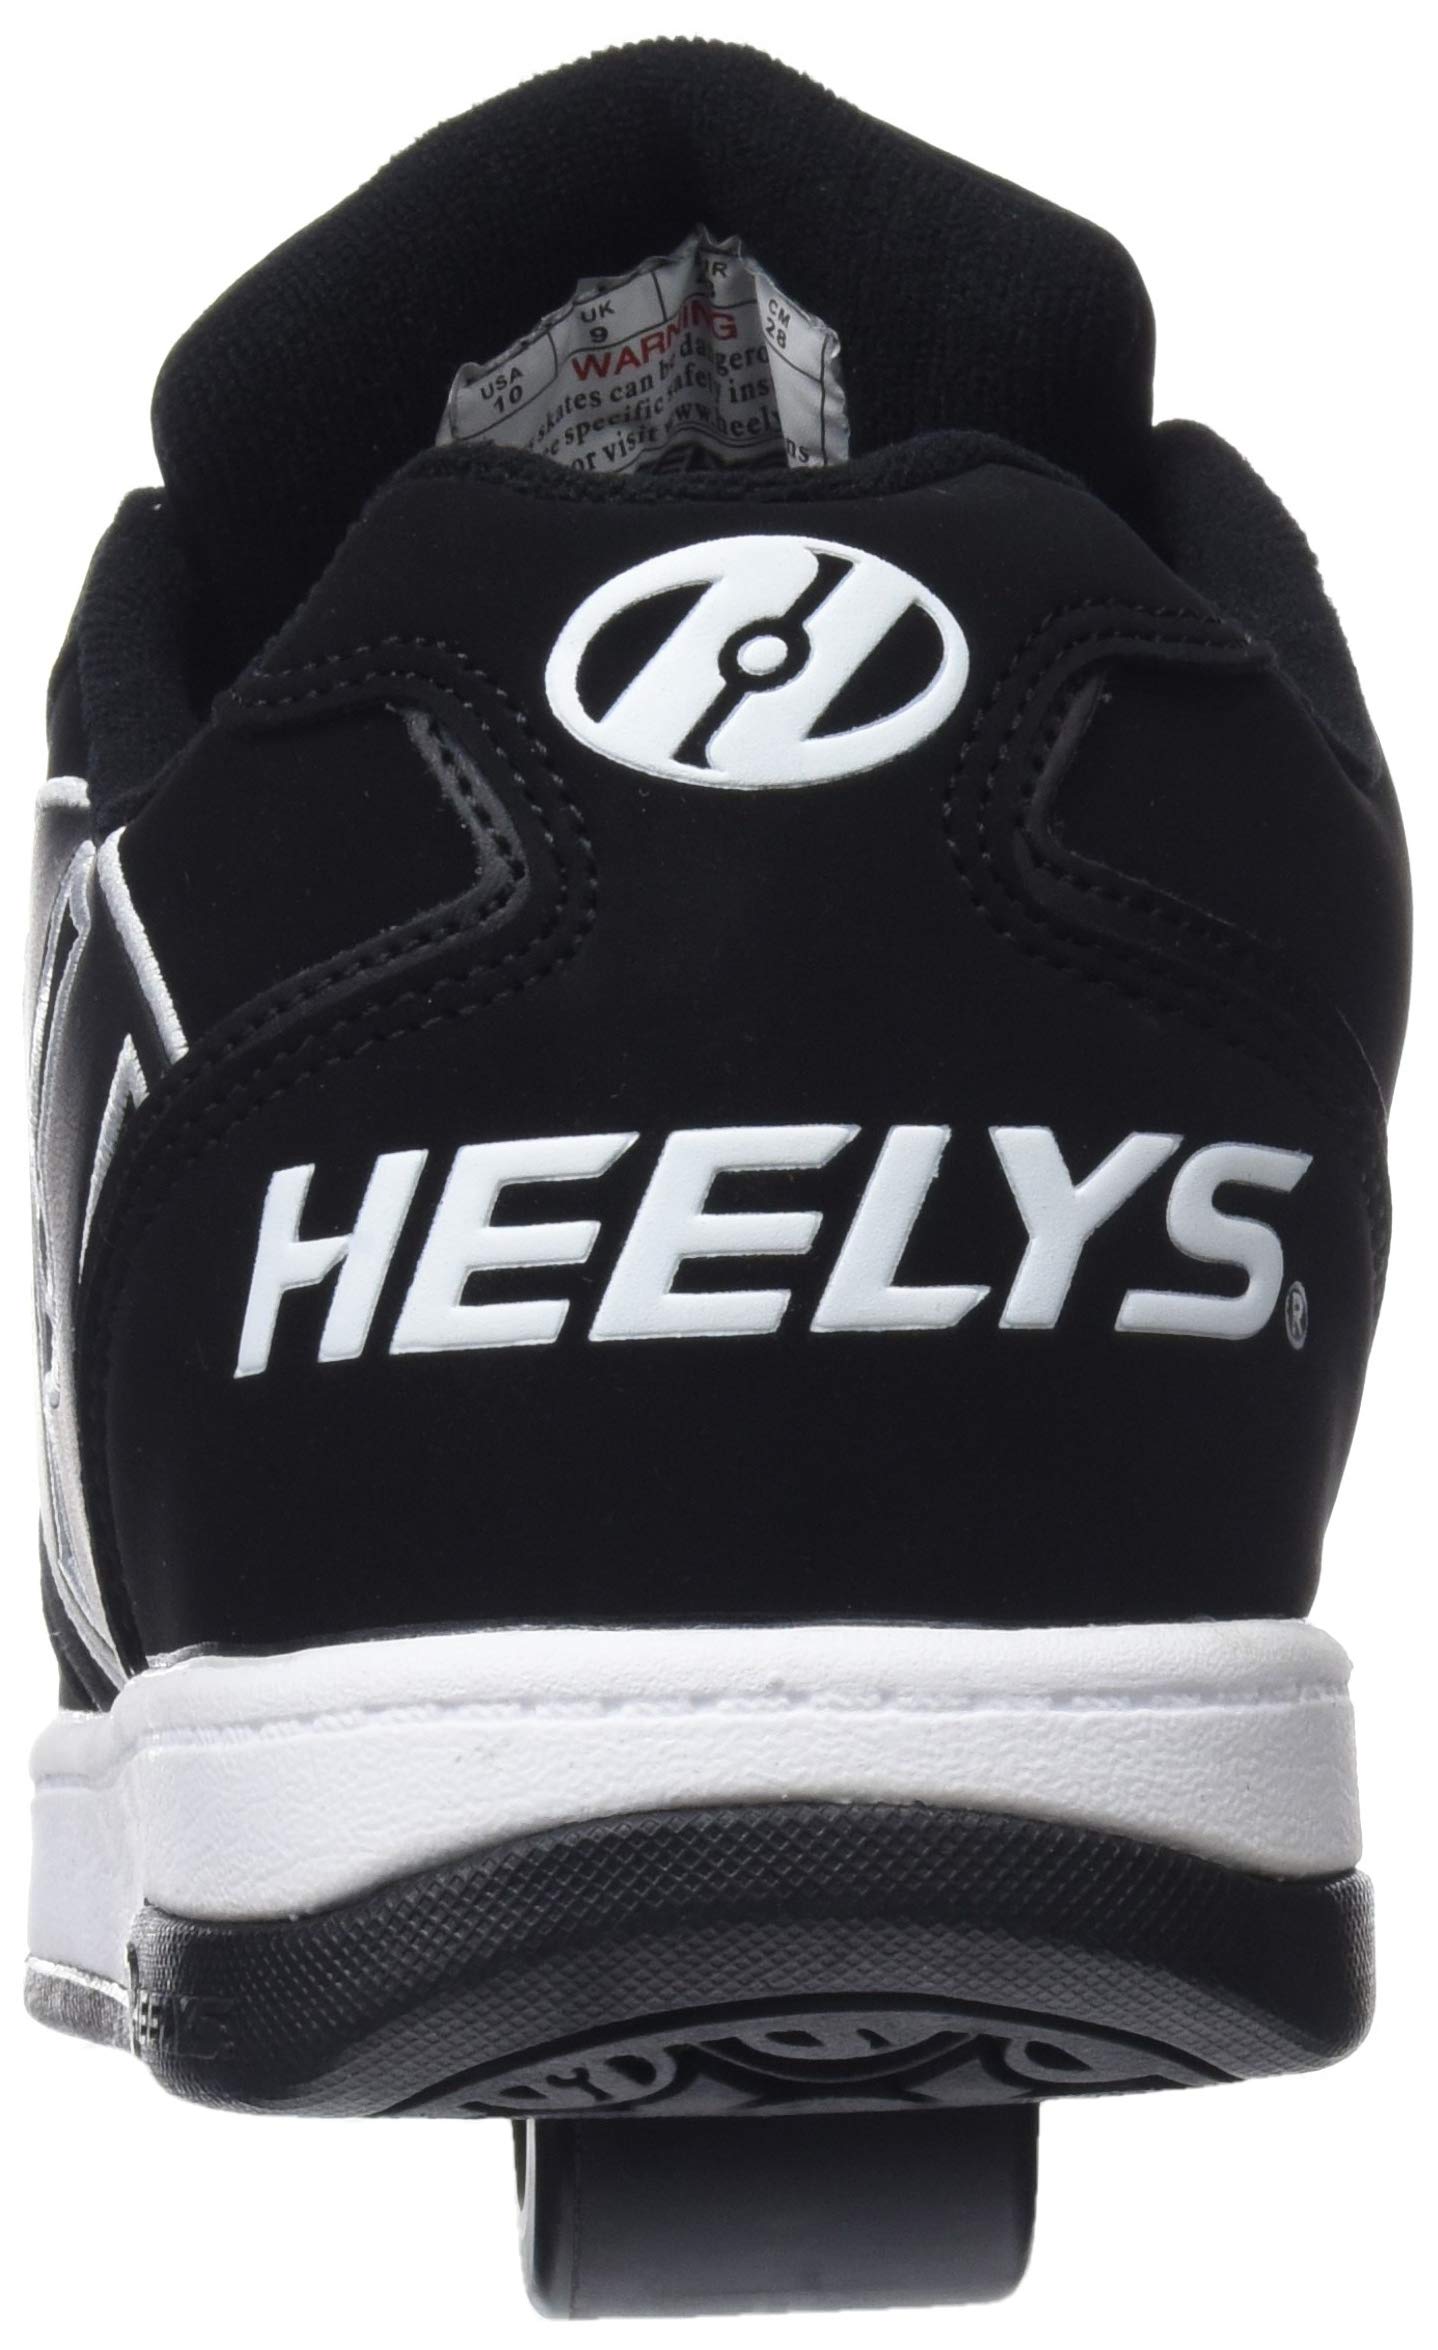 HEELYS Men's Propel 2.0 Tennis Shoe